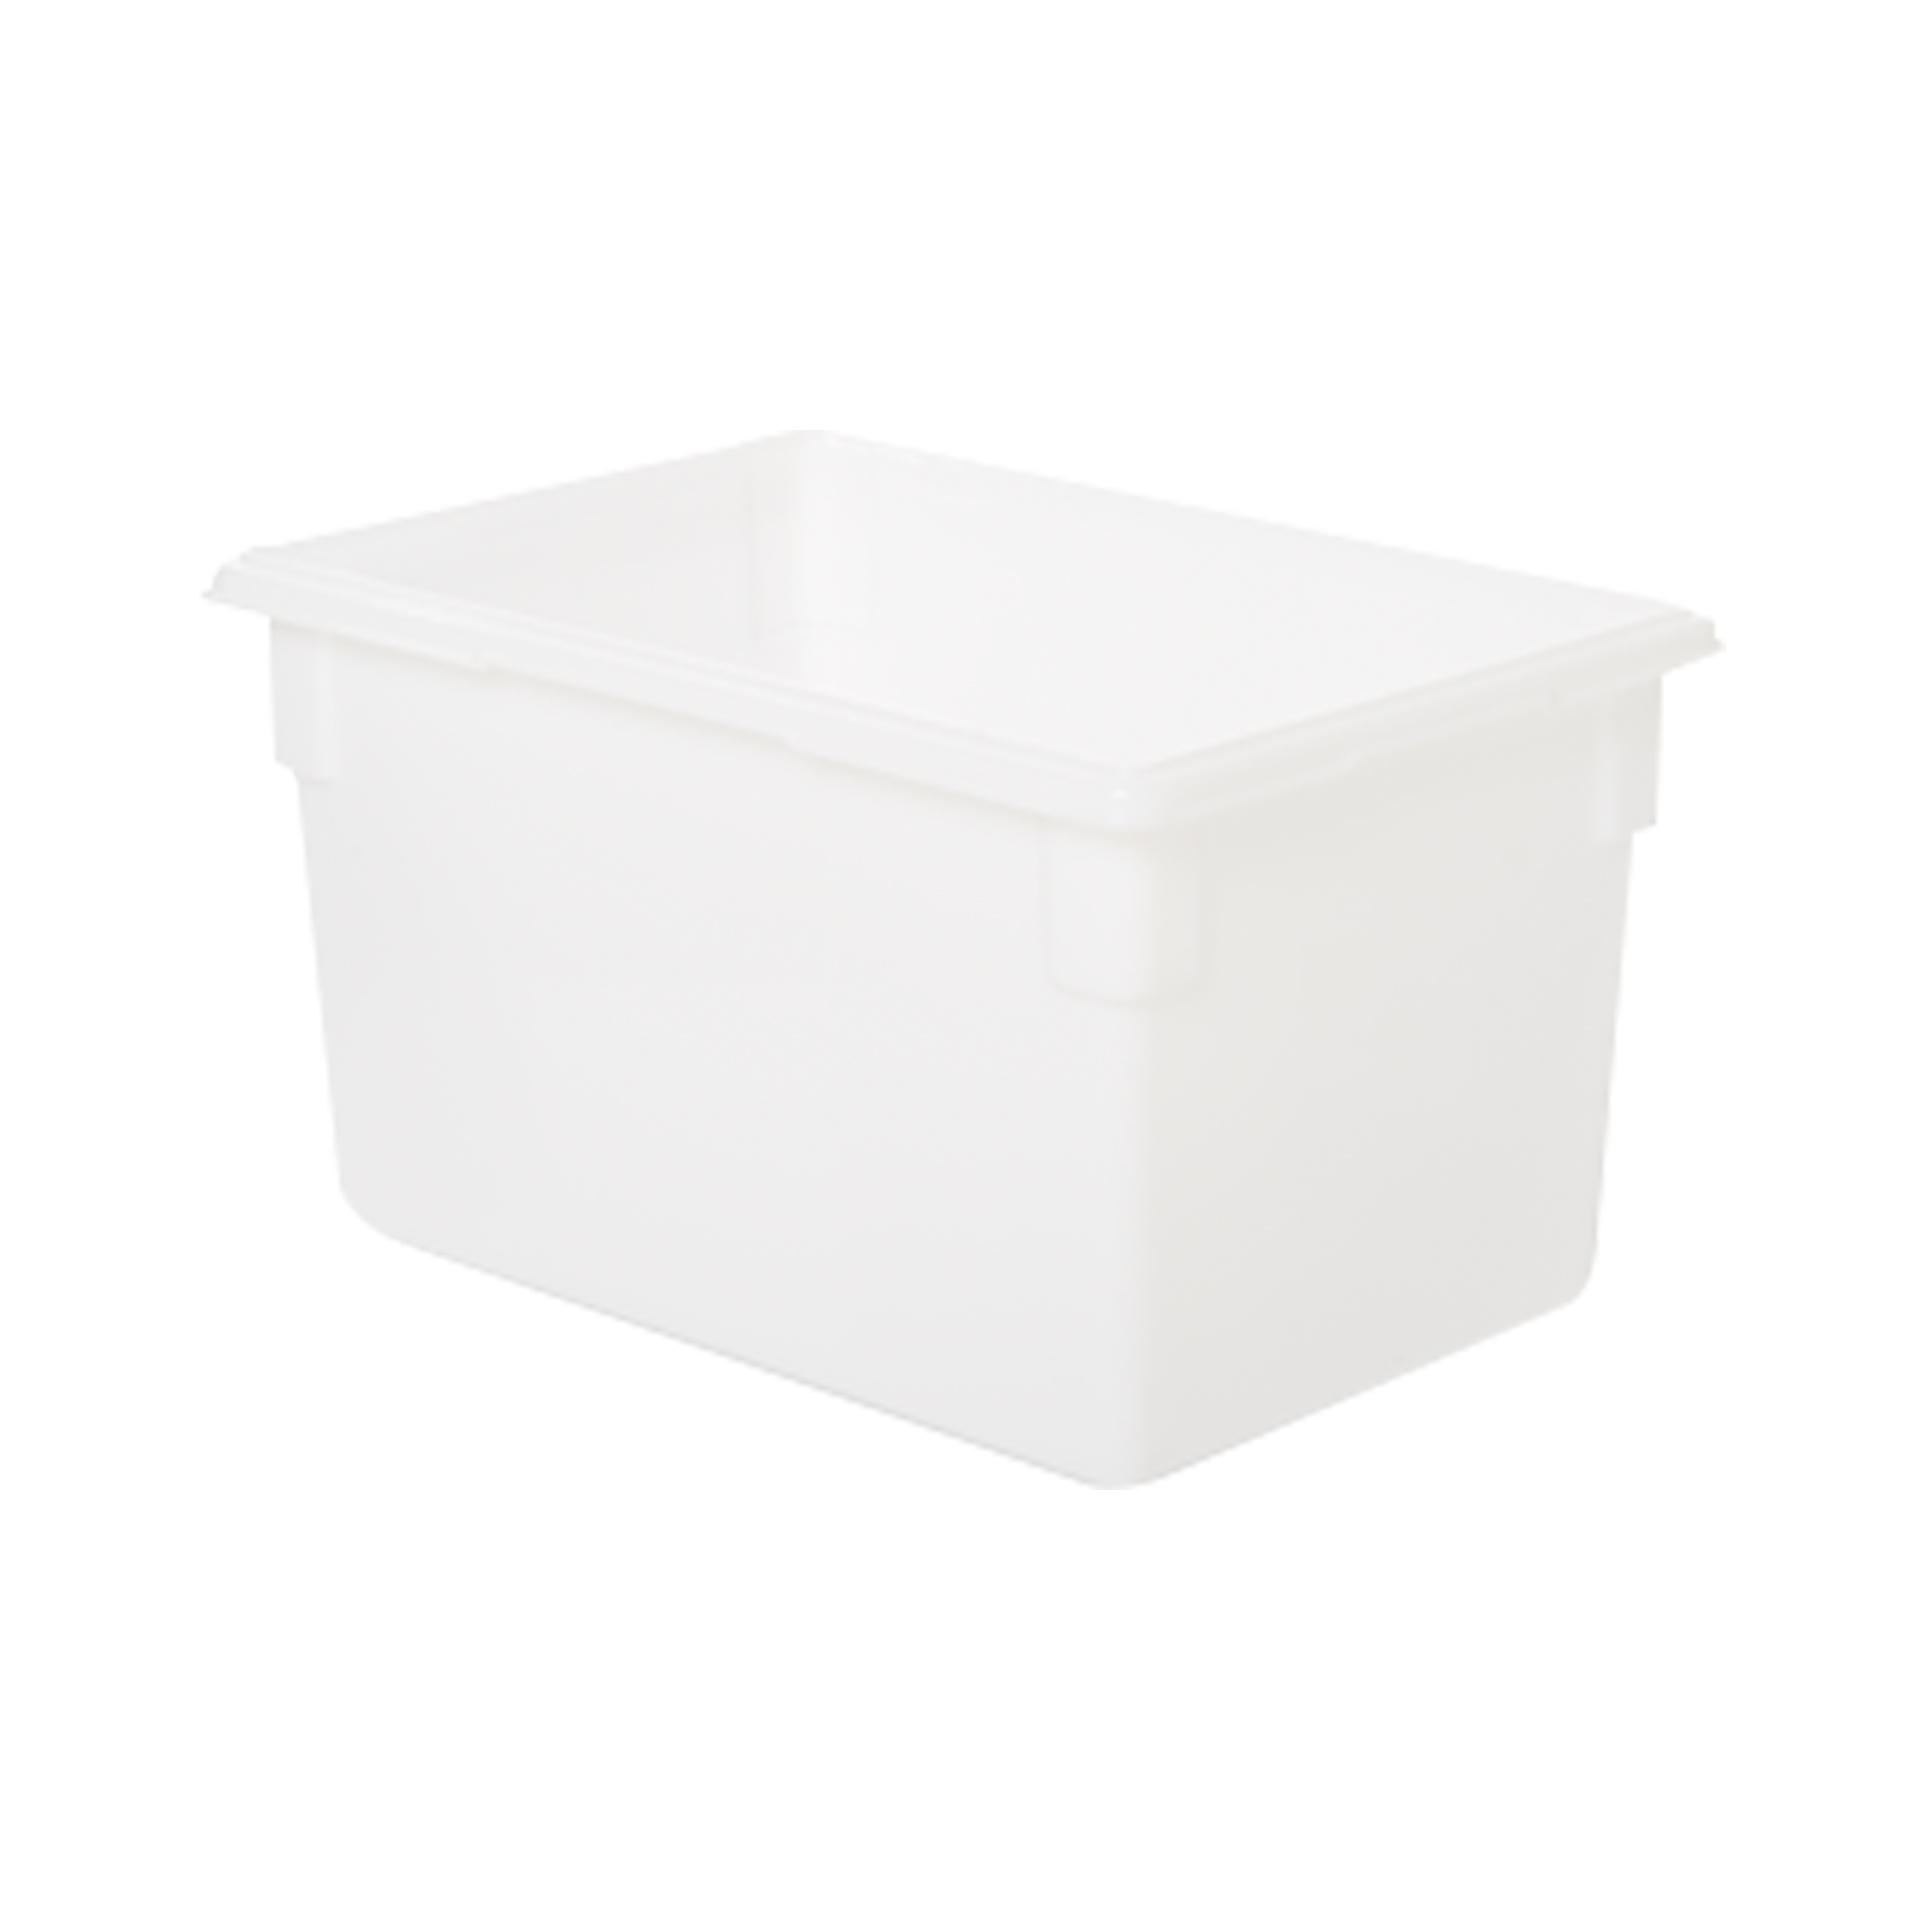 กล่องใส่อาหาร Food Box ขนาด 21.5 แกลลอน สีขาว